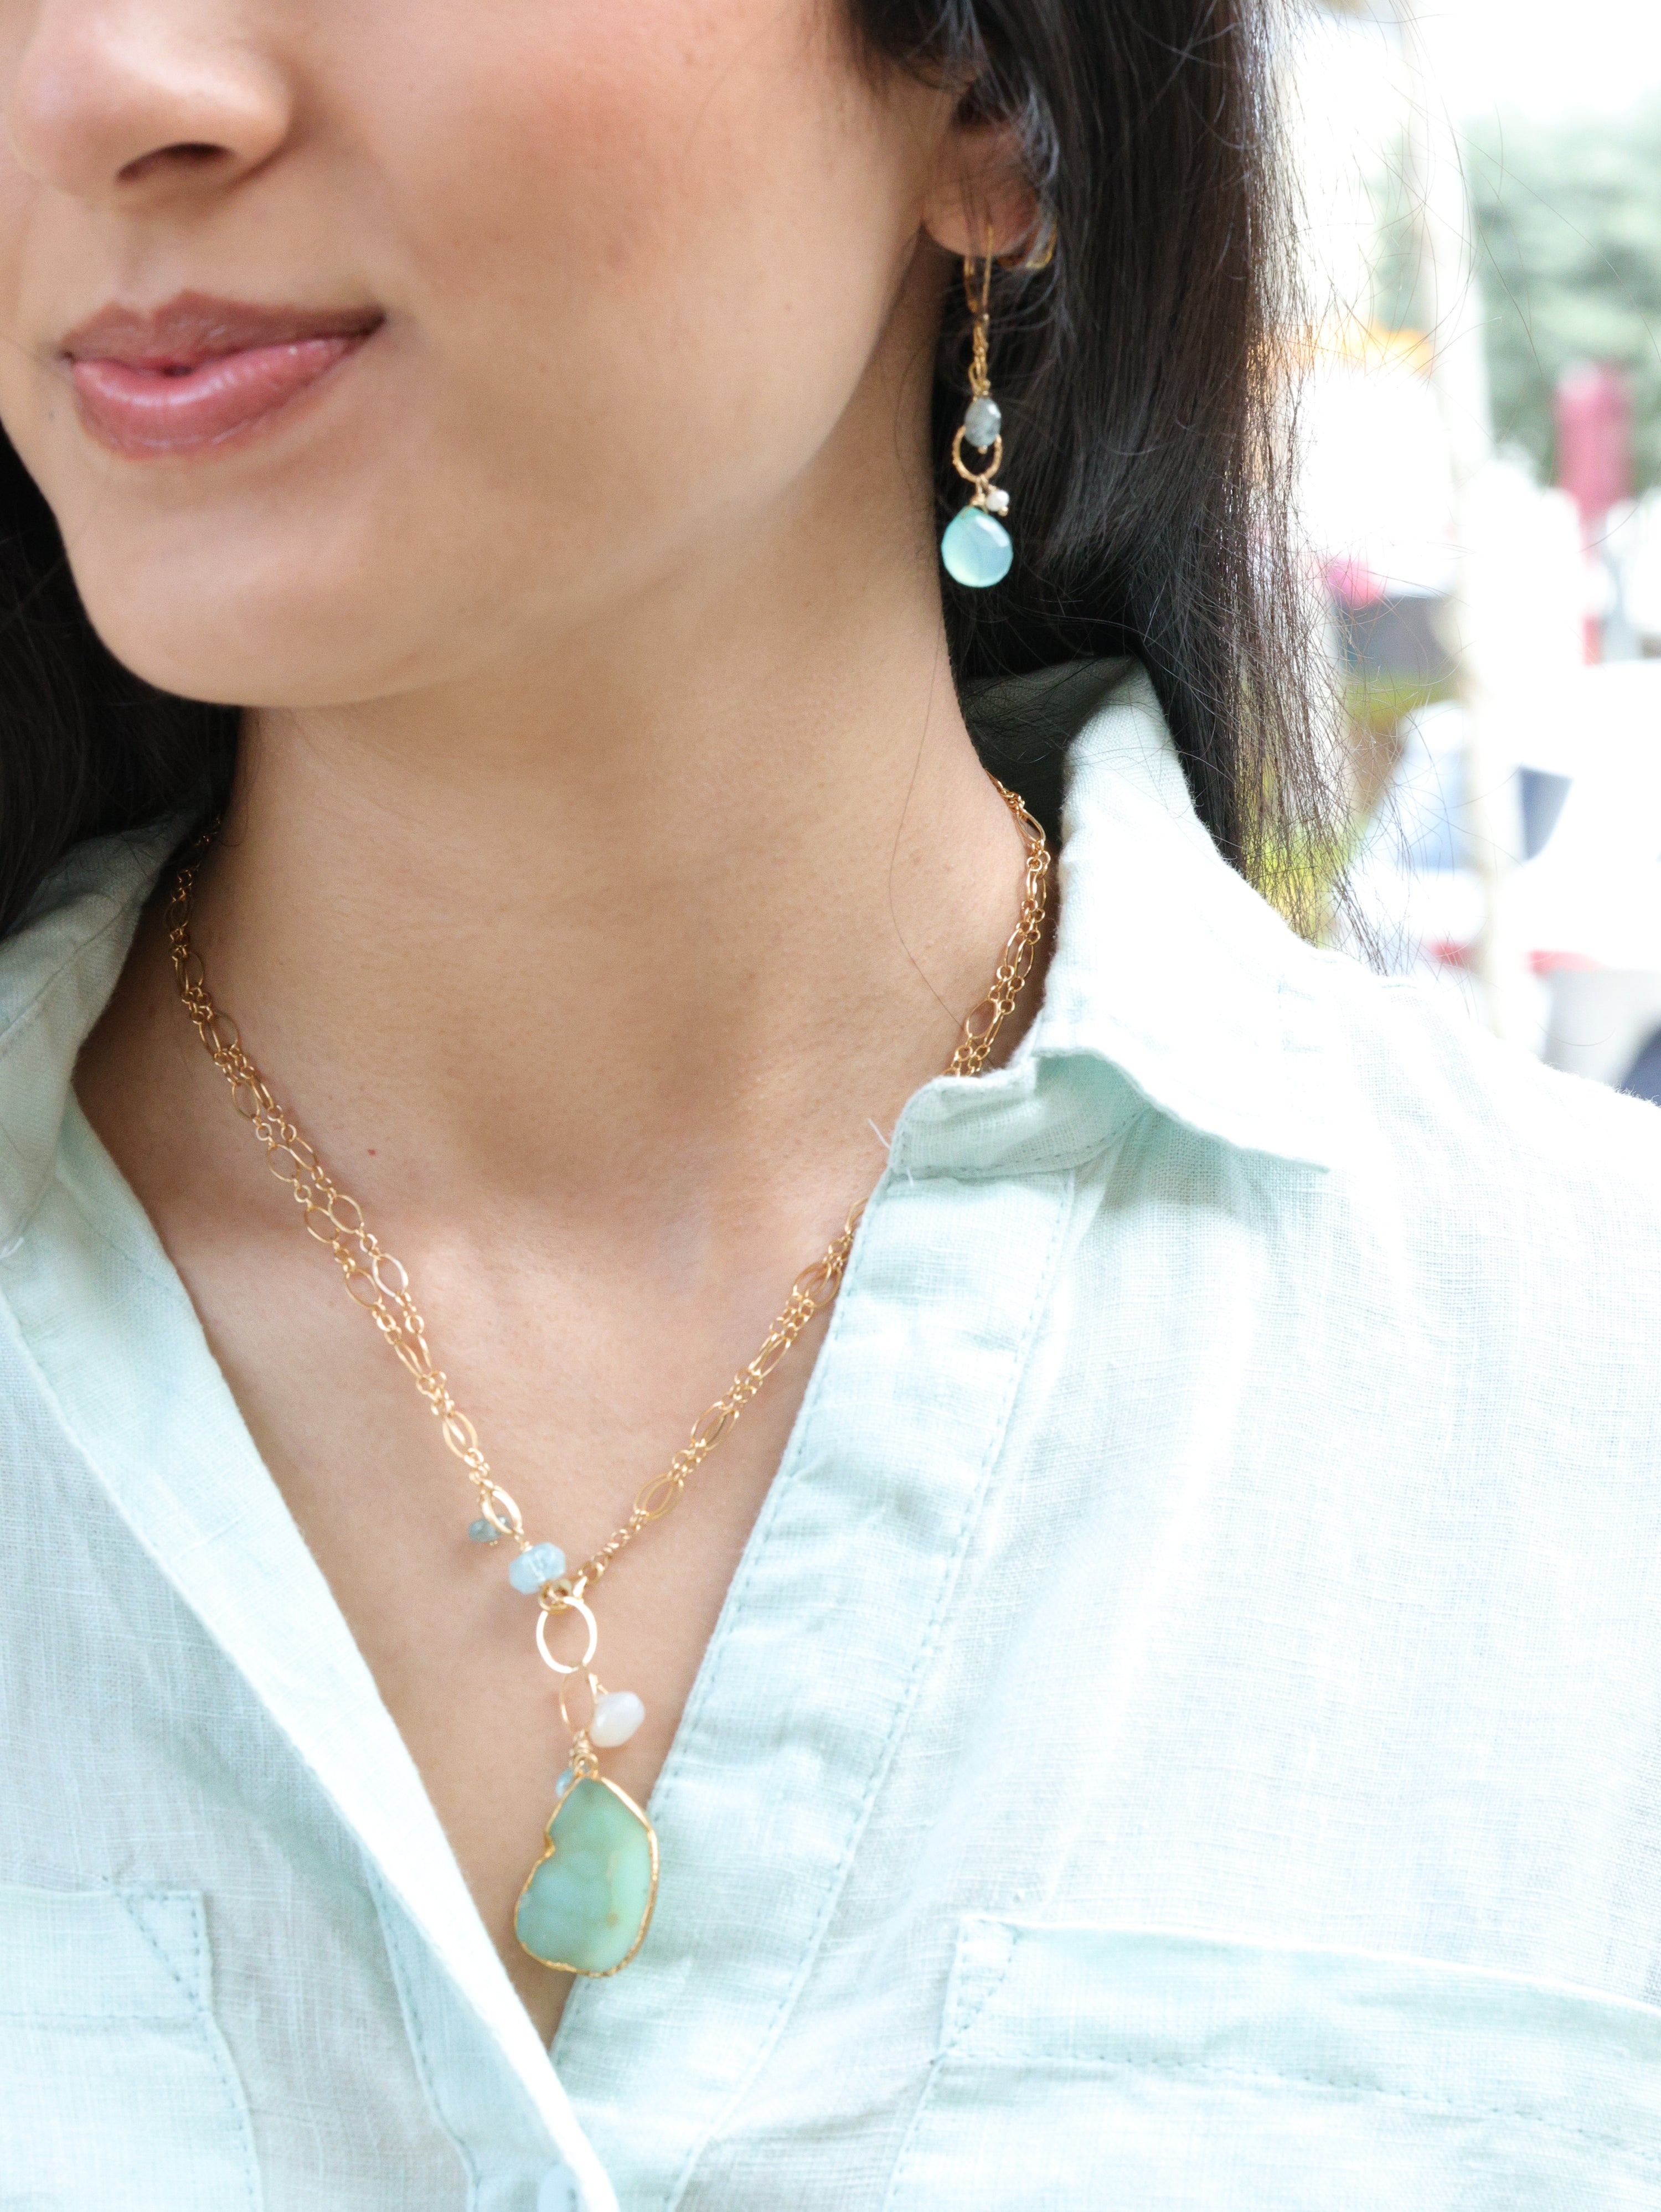 swinging gemstone earrings on model w/ necklace